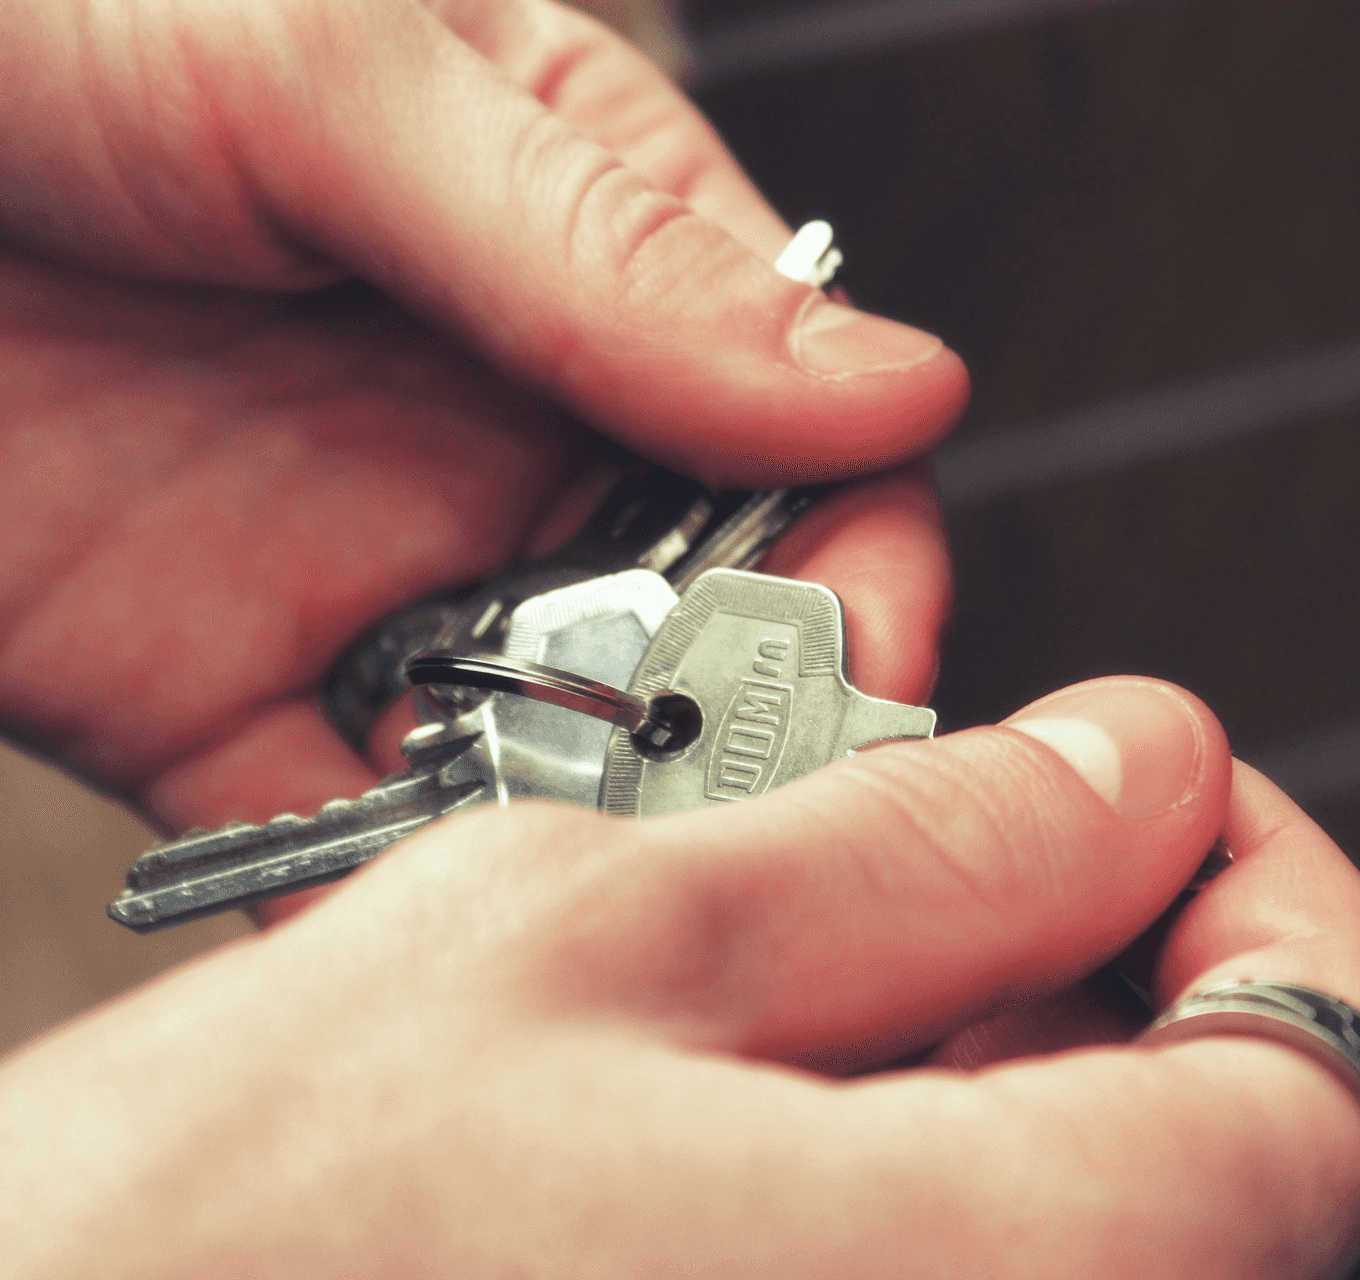 Pro vstup do domu je čip vždy bezpečnější než klíč